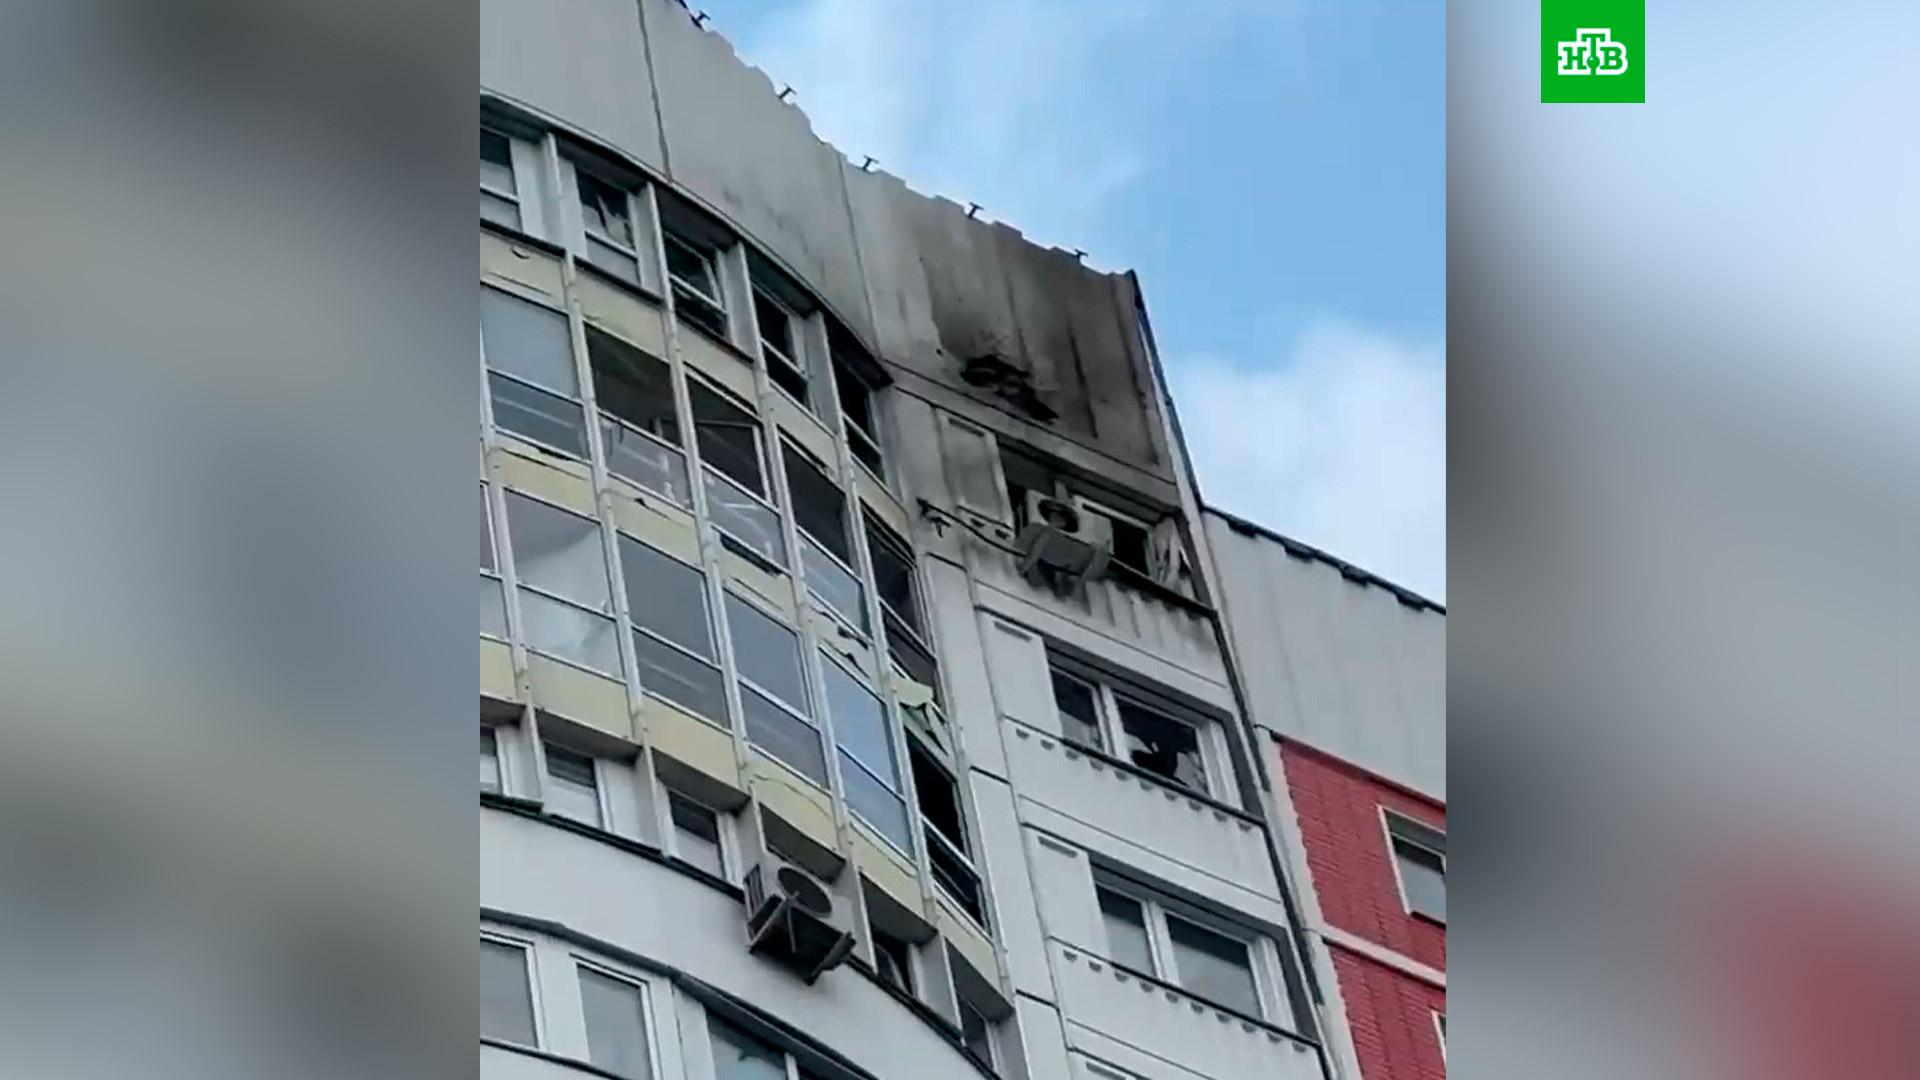 Теракт в москве сколько погибших сколько раненых. Многоэтажки. Многоэтажный дом. Взрыв здания. Пожар в Москве.